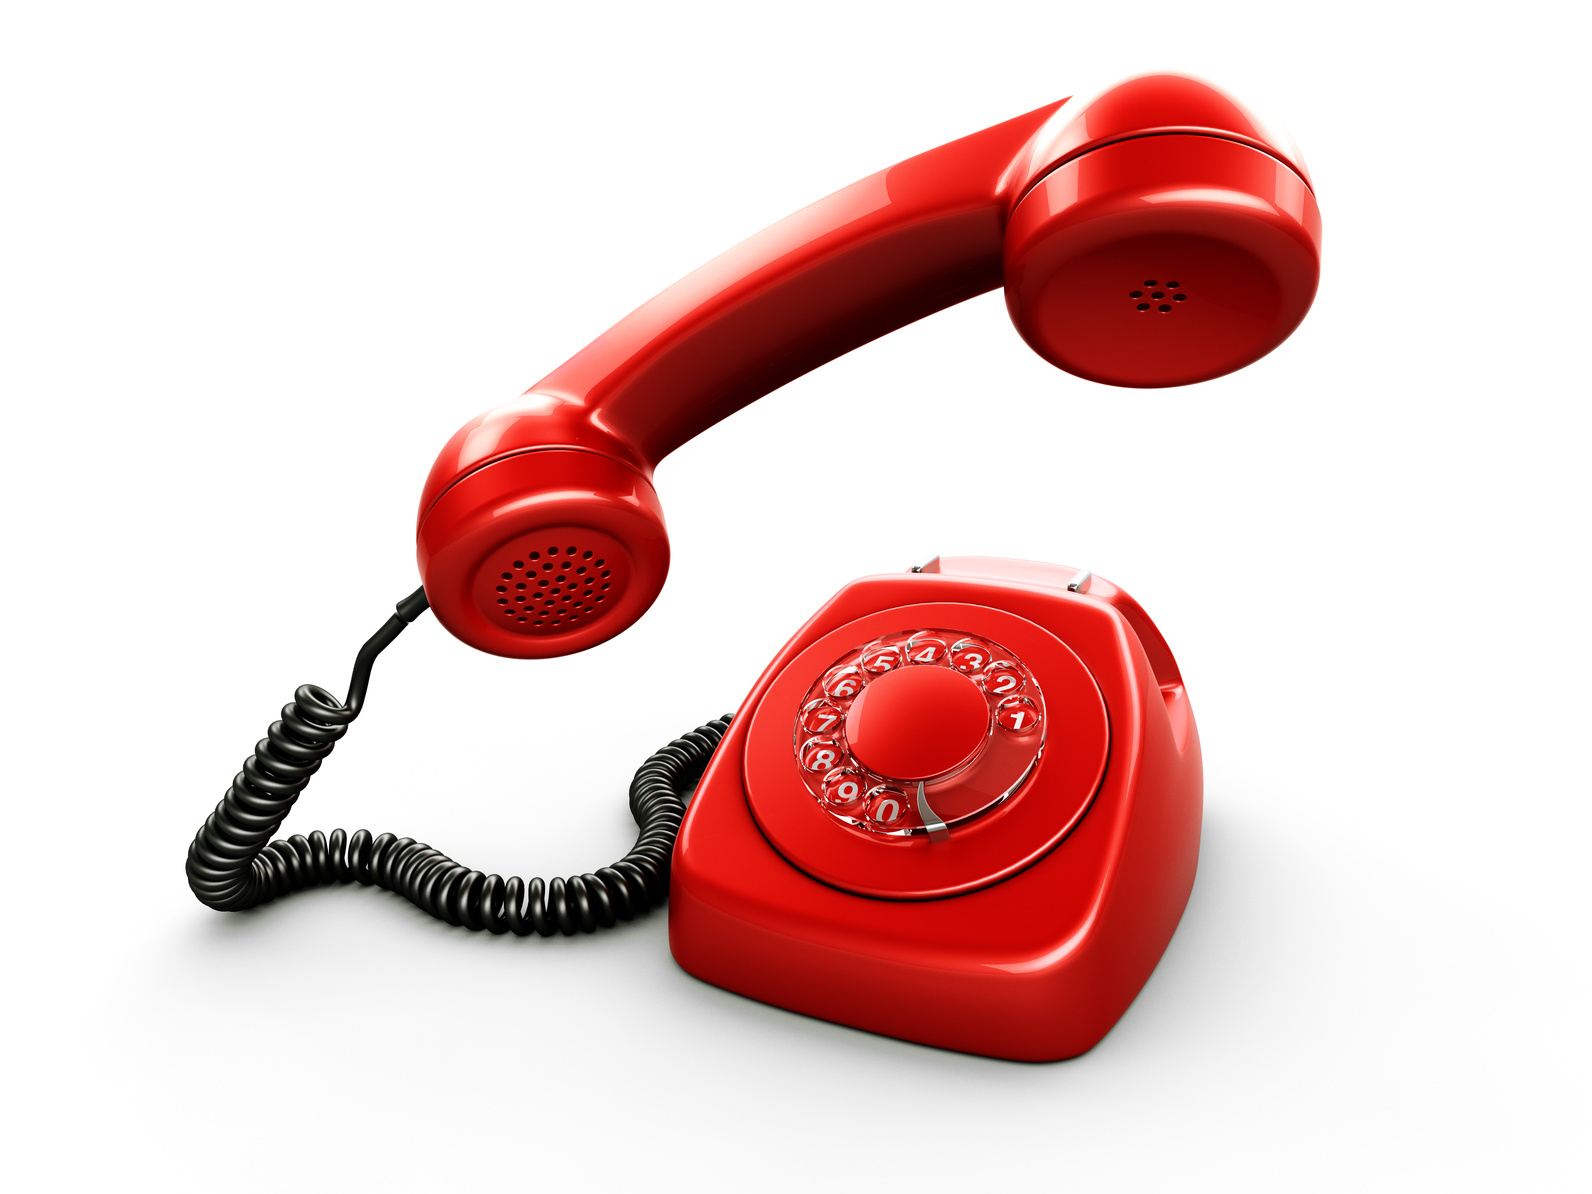 Телефон стал горячим. Телефон доверия. Телефонная трубка. Красная телефонная трубка. Изображение телефона.